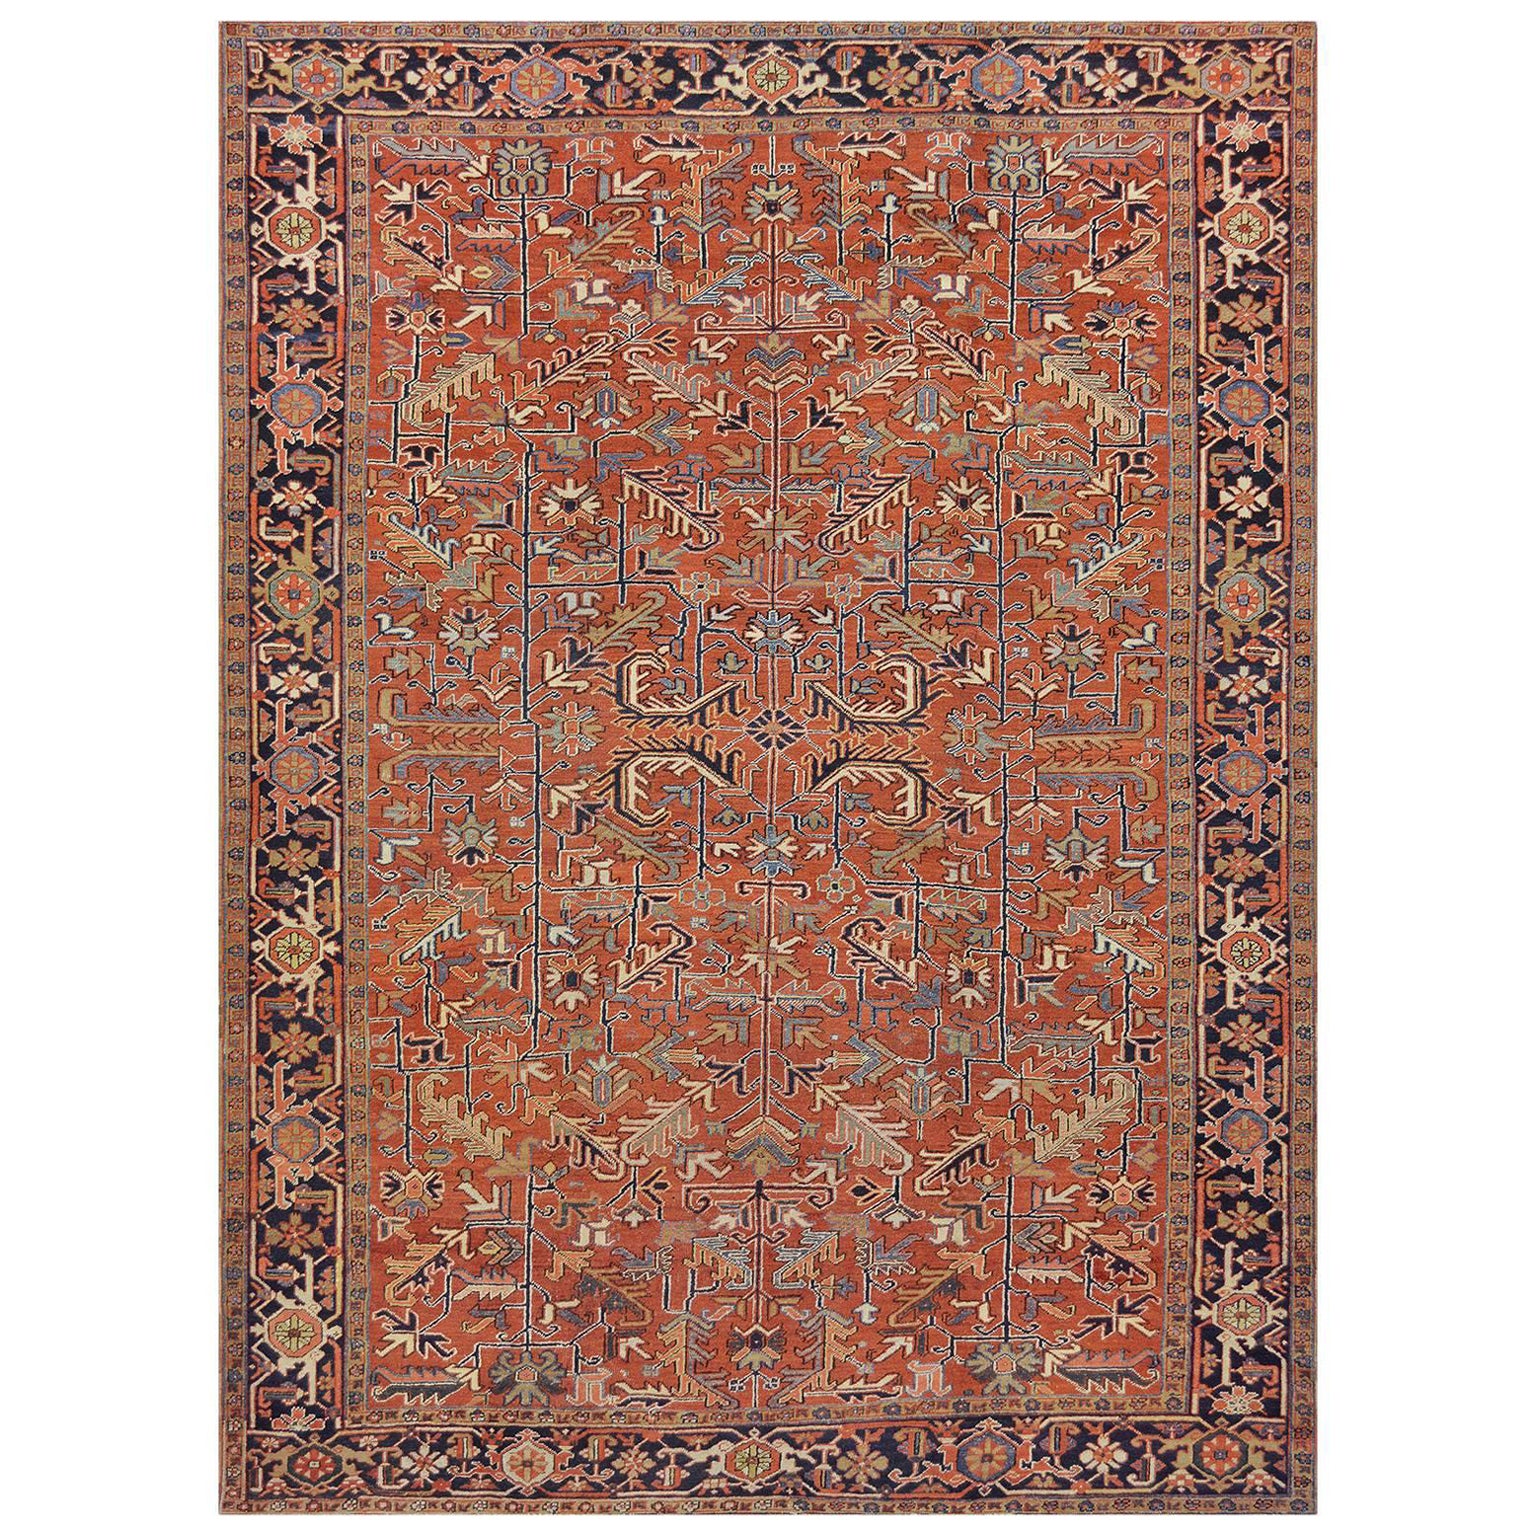 Heriz-Teppich aus Wolle des frühen 20. Jahrhunderts aus Nordwest Persien